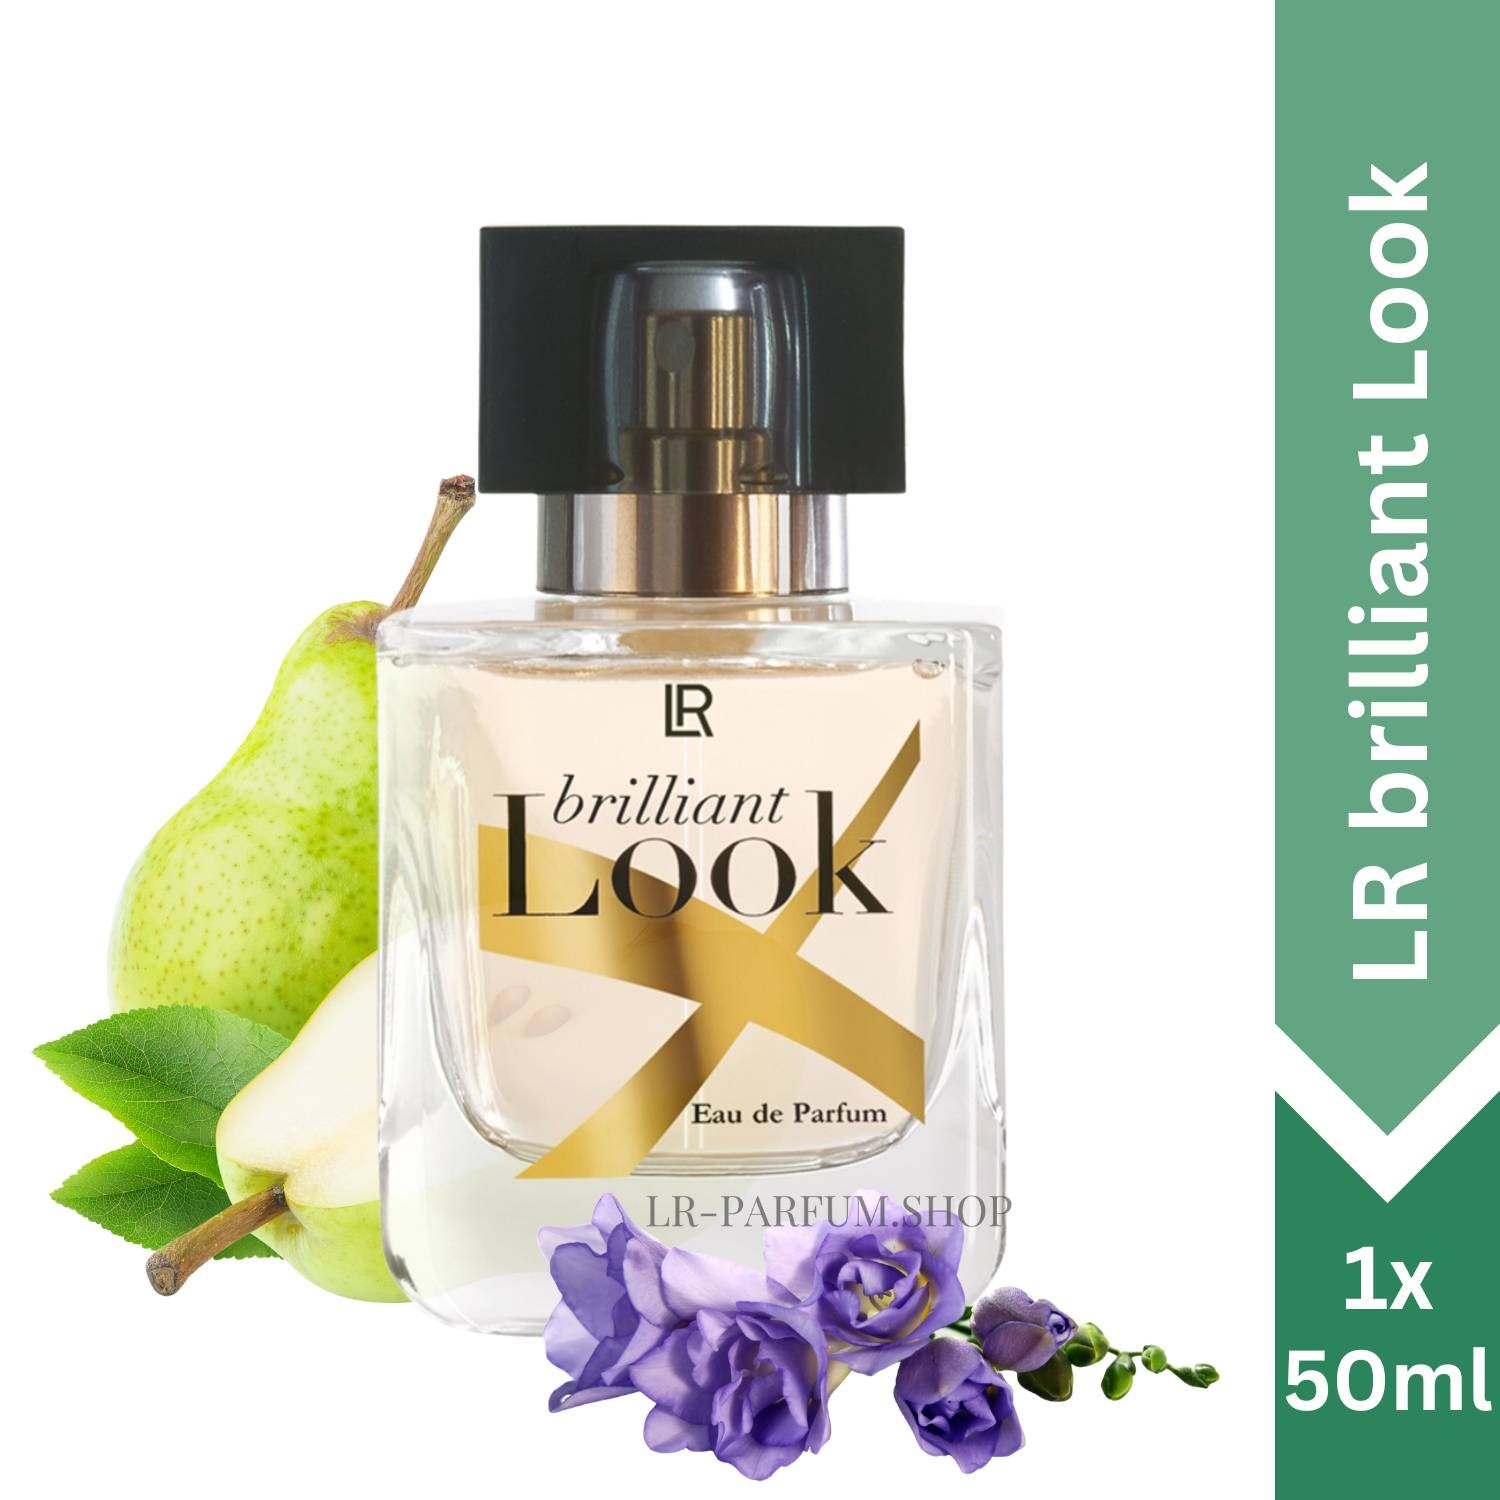 LR Brilliant Look - Eau de Parfum 50ml - LR-Parfum.shop